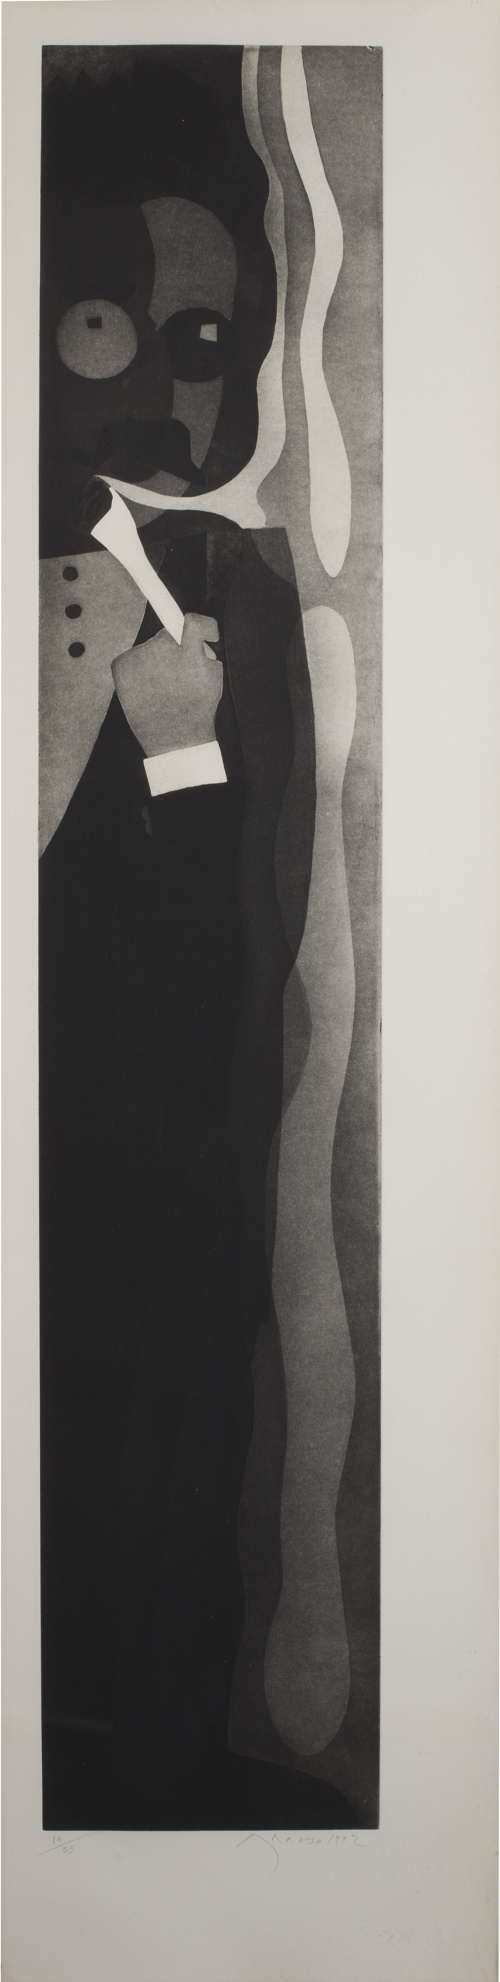 EDUARDO ARROYO (Madrid, 1937) Retrato de Walter Benjamin o